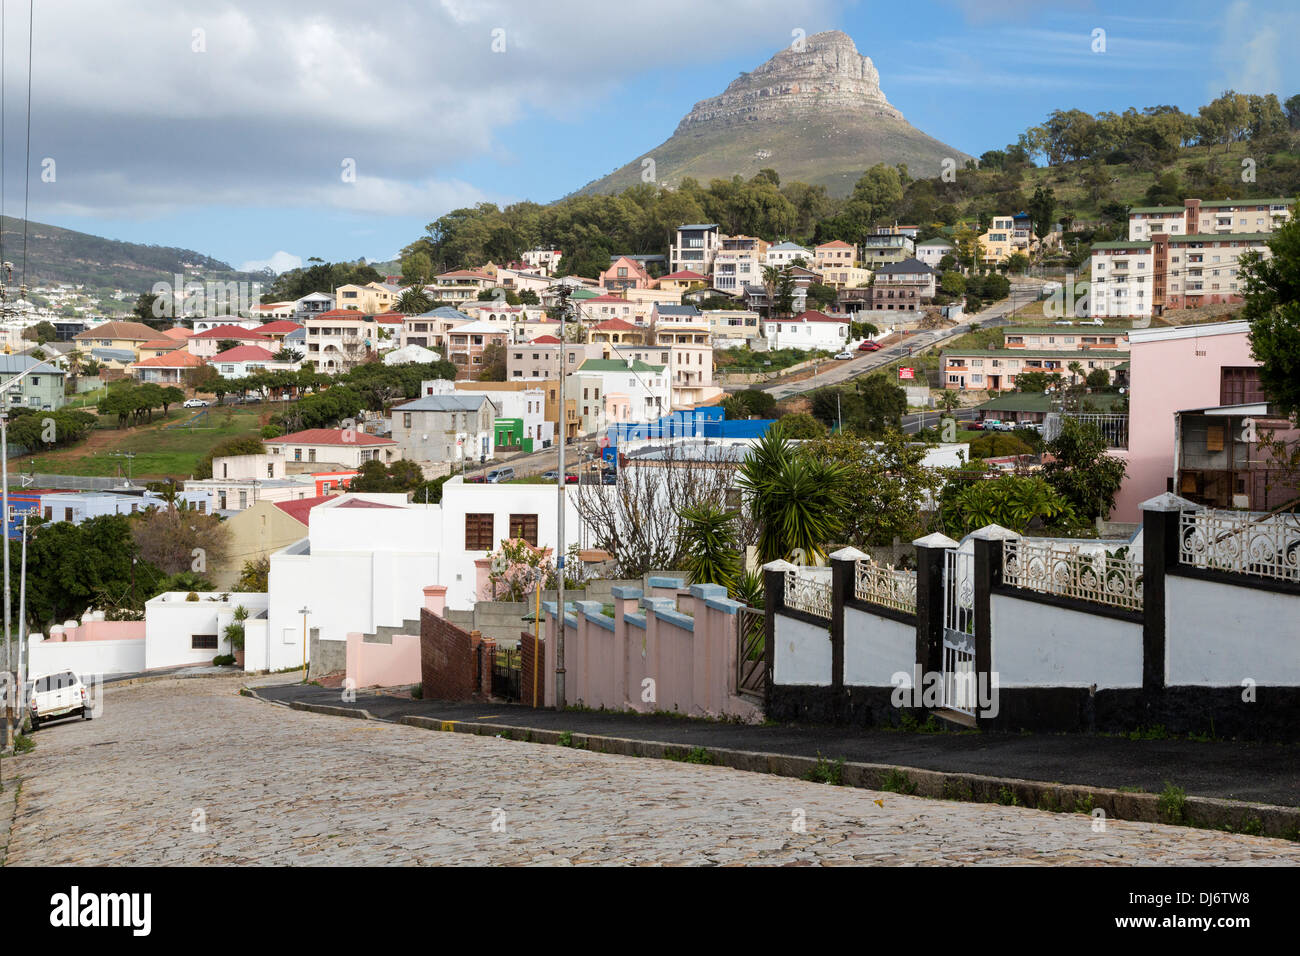 Südafrika, Cape Town. Häuser in den höheren Lagen des Bo-Kaap. Löwenkopf in der Ferne. Stockfoto